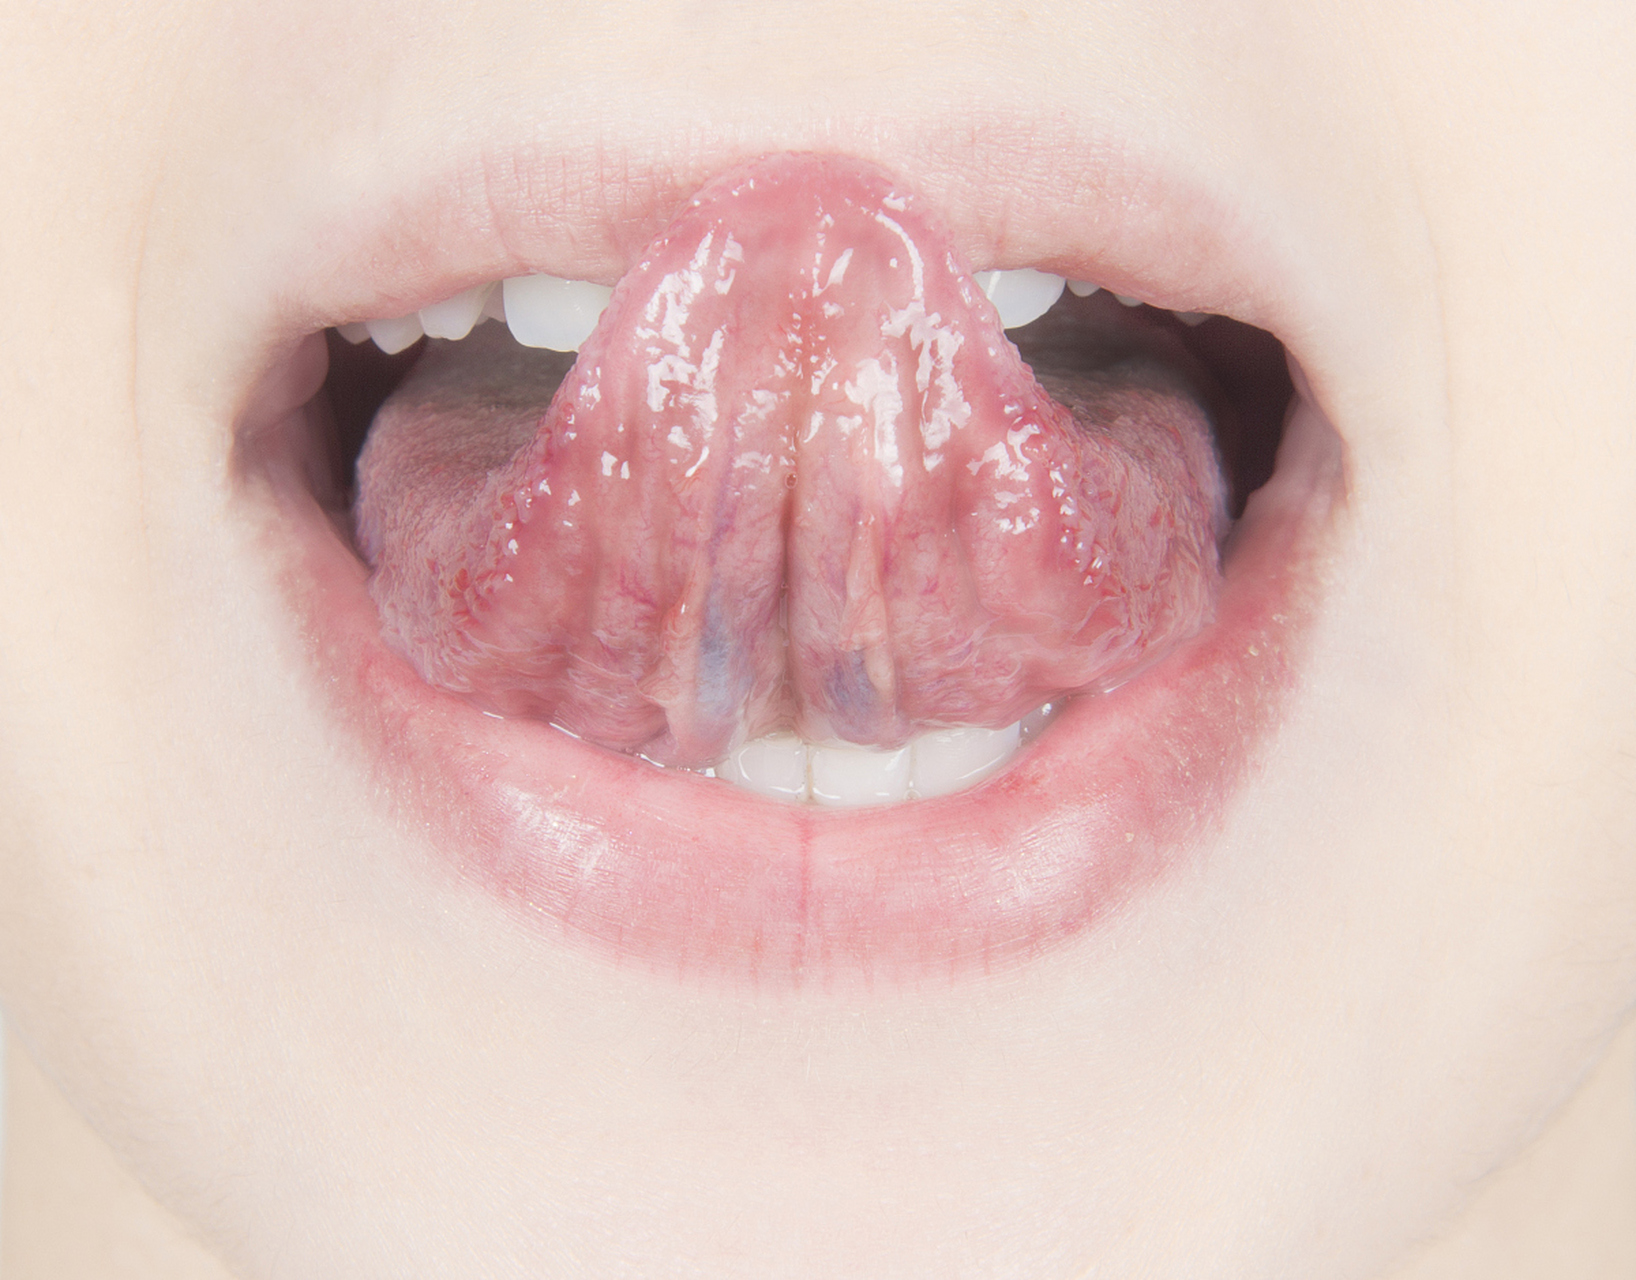 舌头下面的筋图片